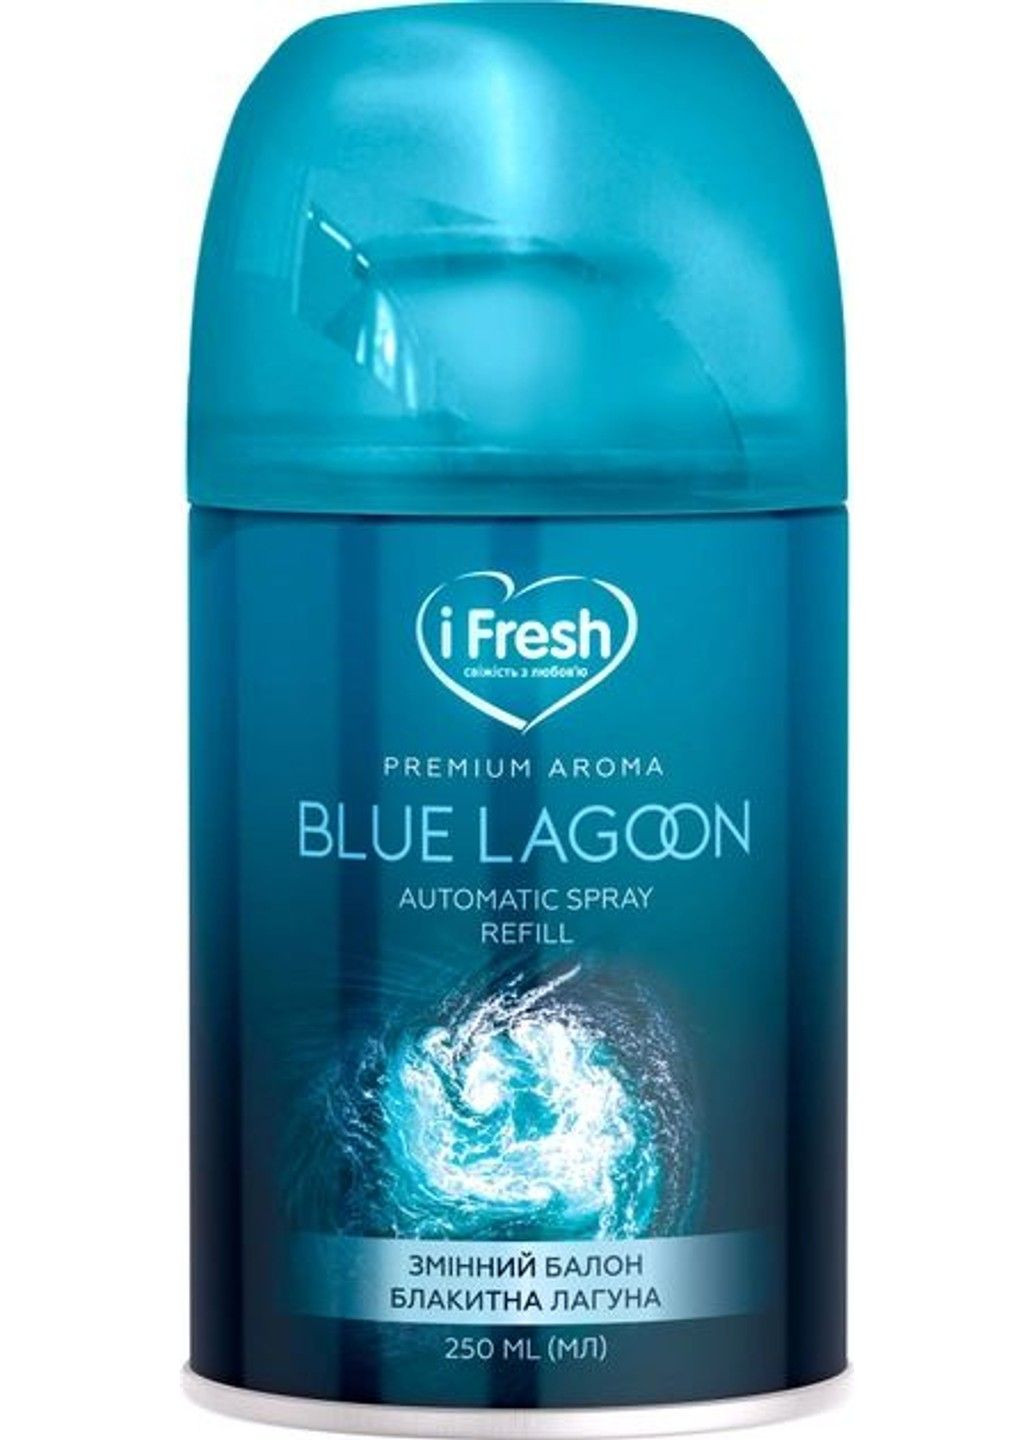 Сменный аэрозольный баллон Premium aroma blue lagoon 250 мл iFresh (280898443)